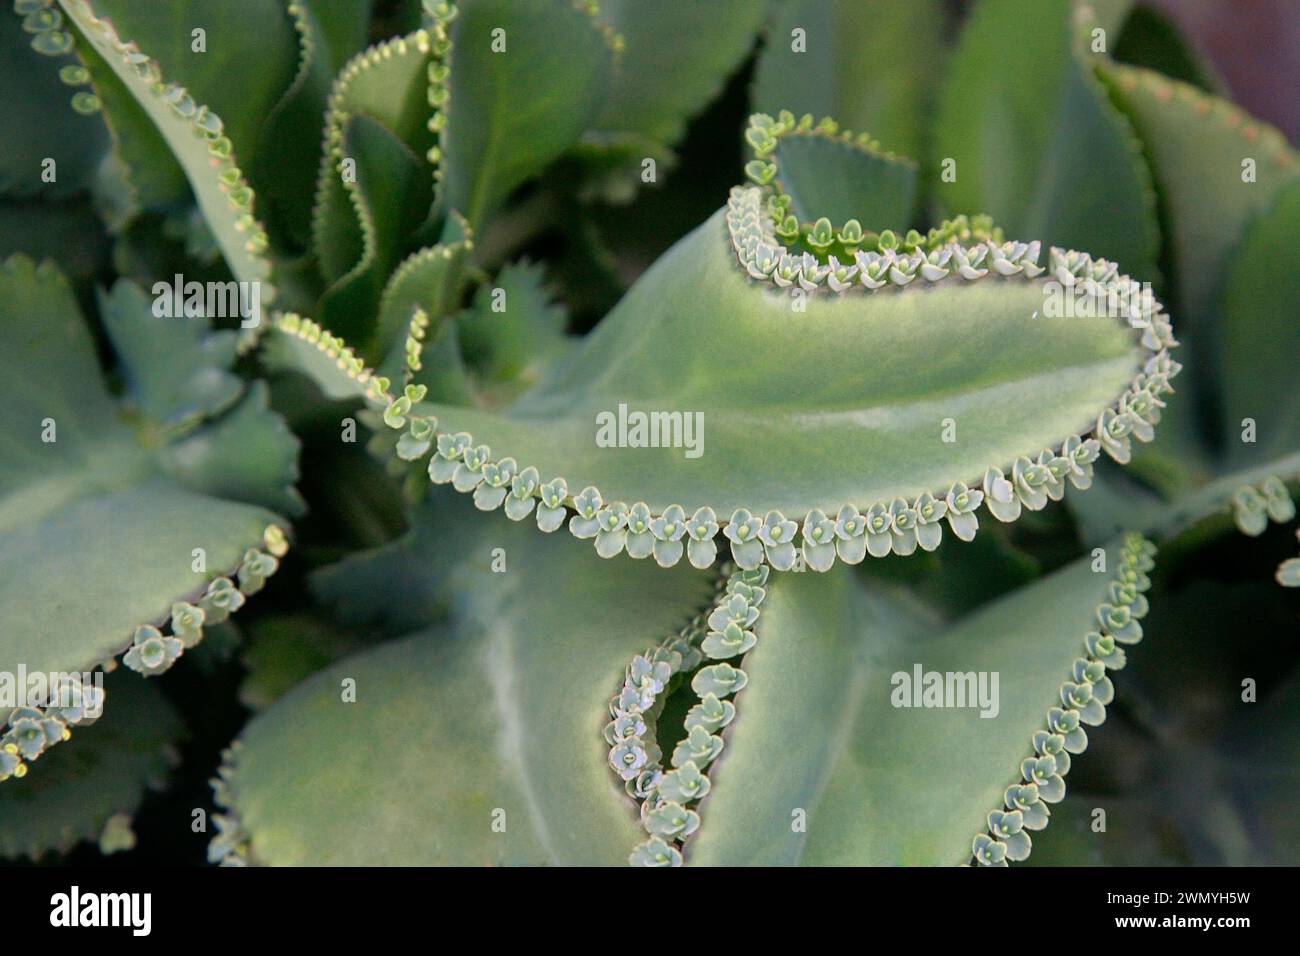 Kalanchoe (Kalanchoe daigremontiana, Bryophyllum daigremontianum), Blatt mit Töchterplätzchen. Stockfoto